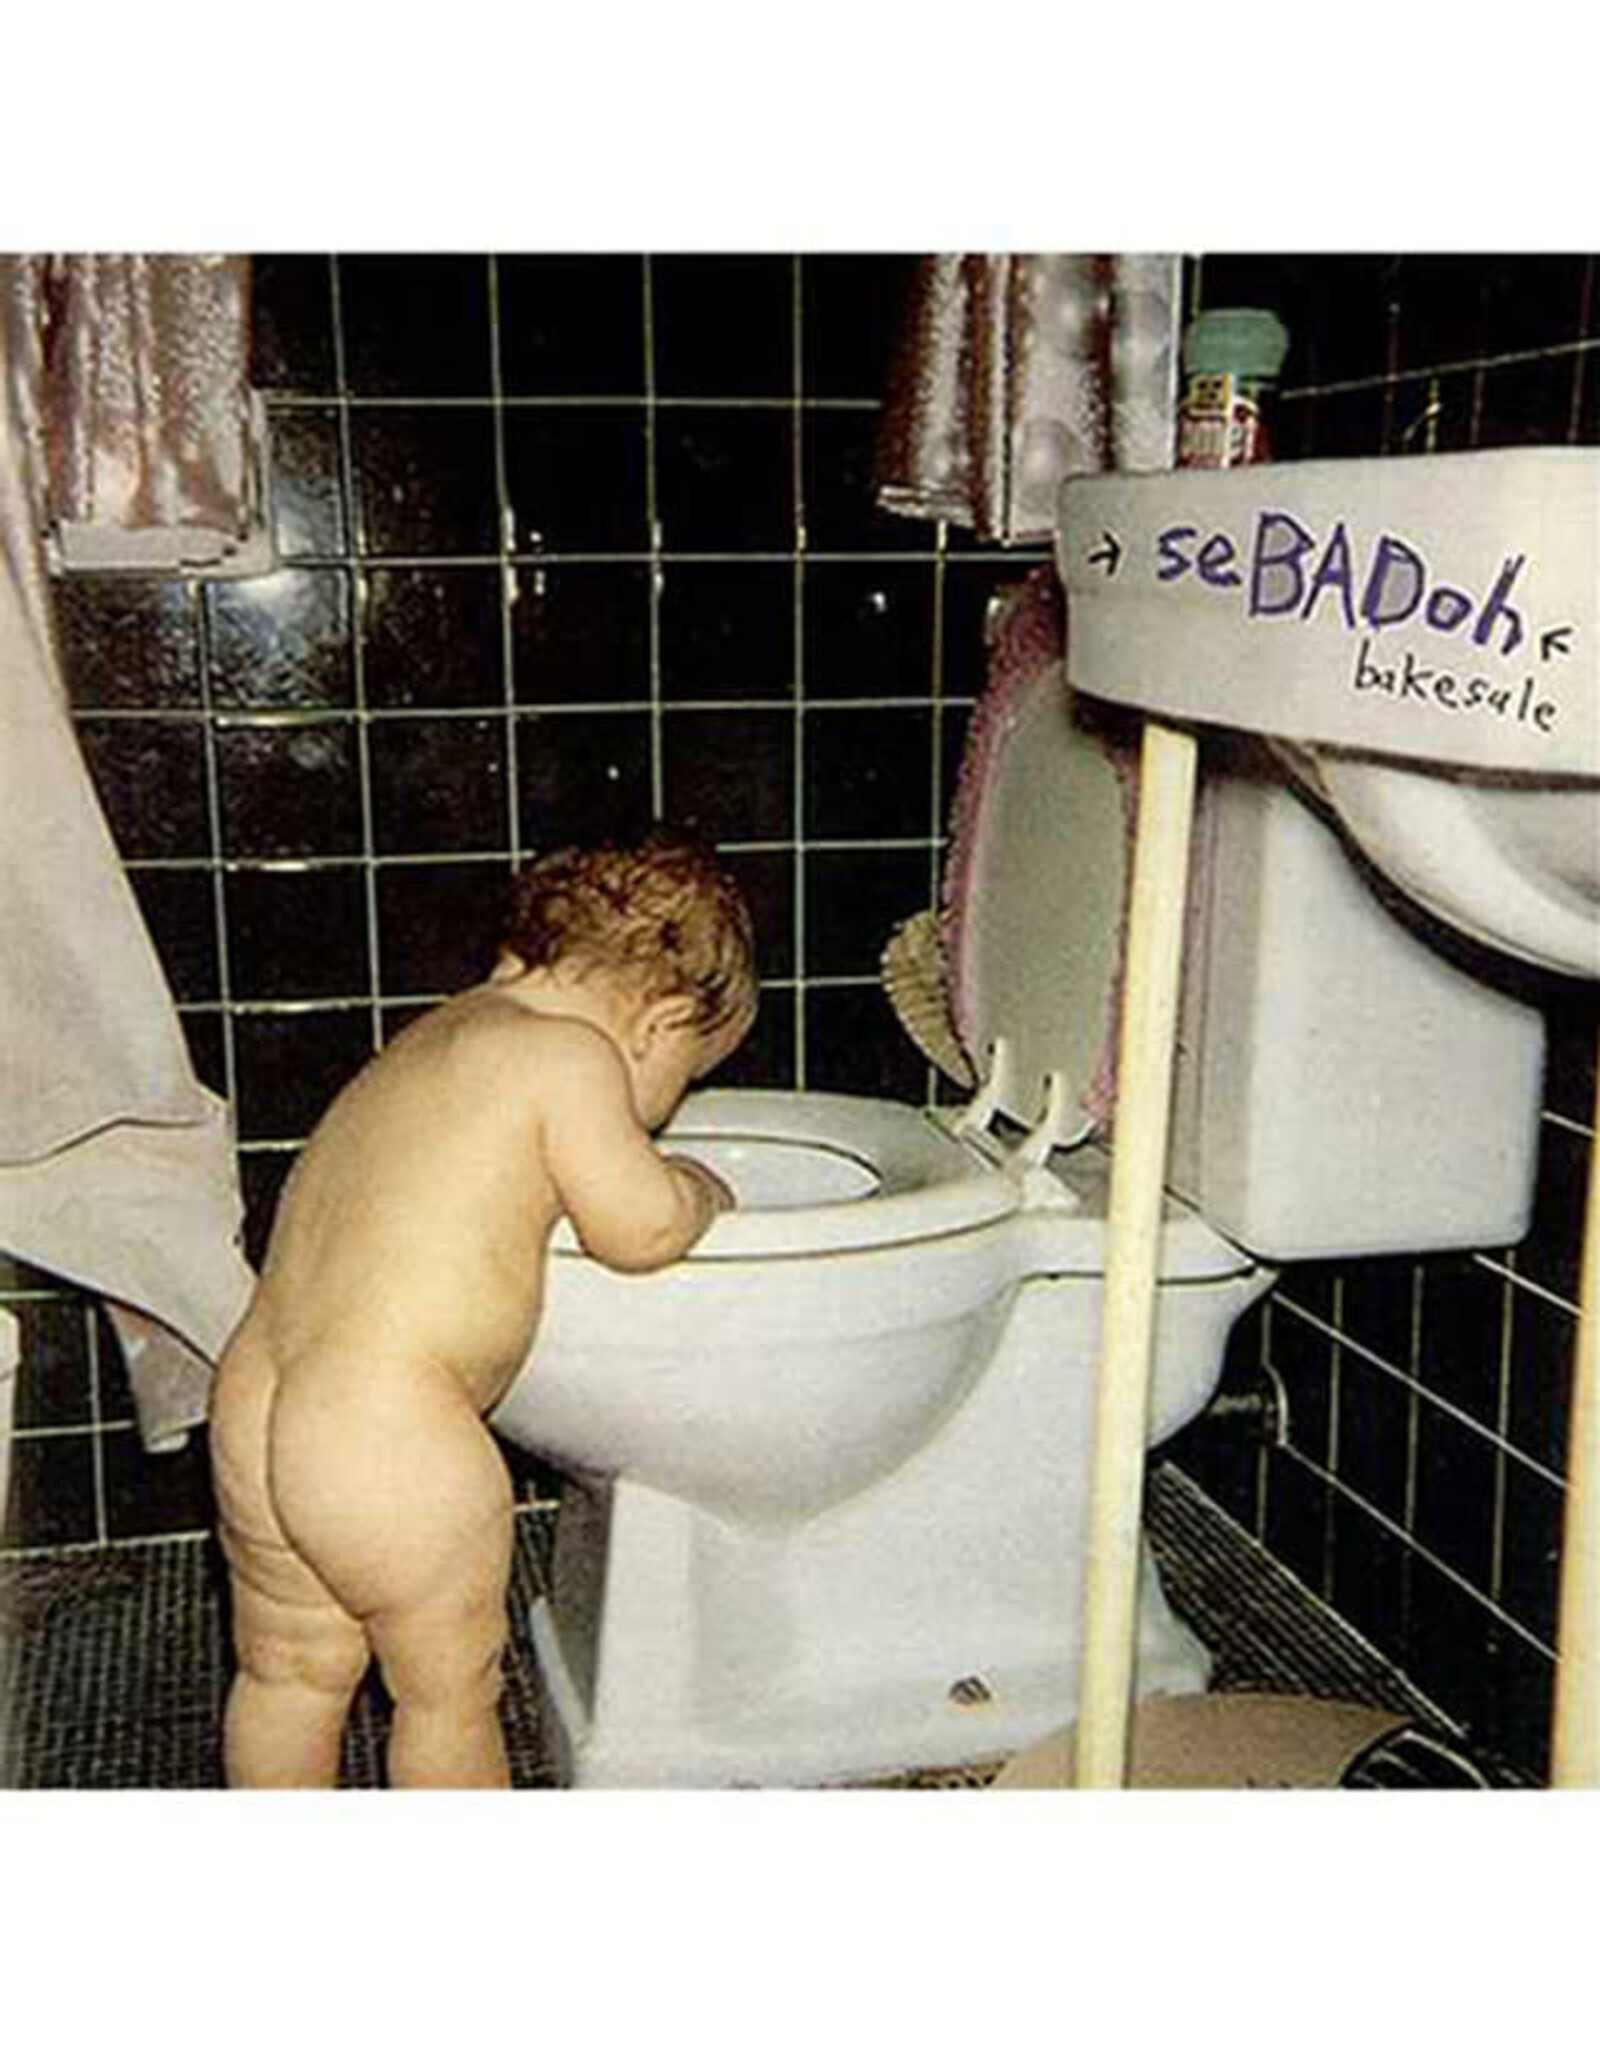 Sub Pop Sebadoh: Bakesale (deluxe edition) LP